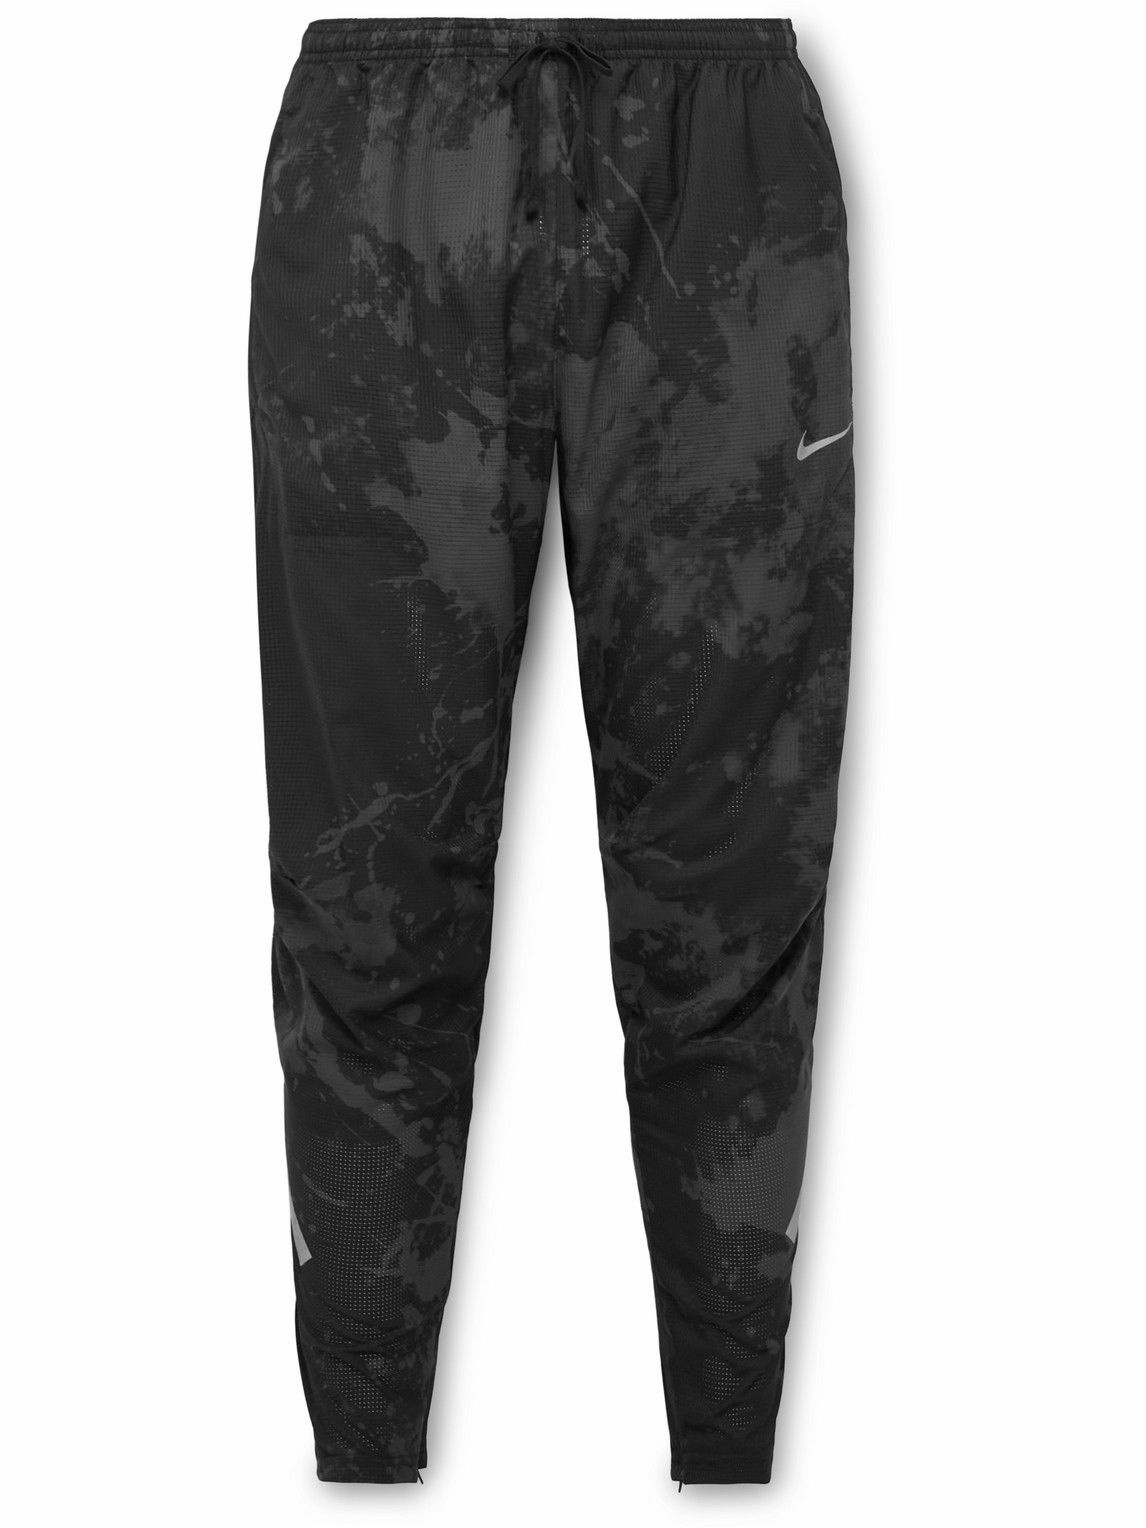 Nike Dri-FIT Run Division Leggings Black/Black